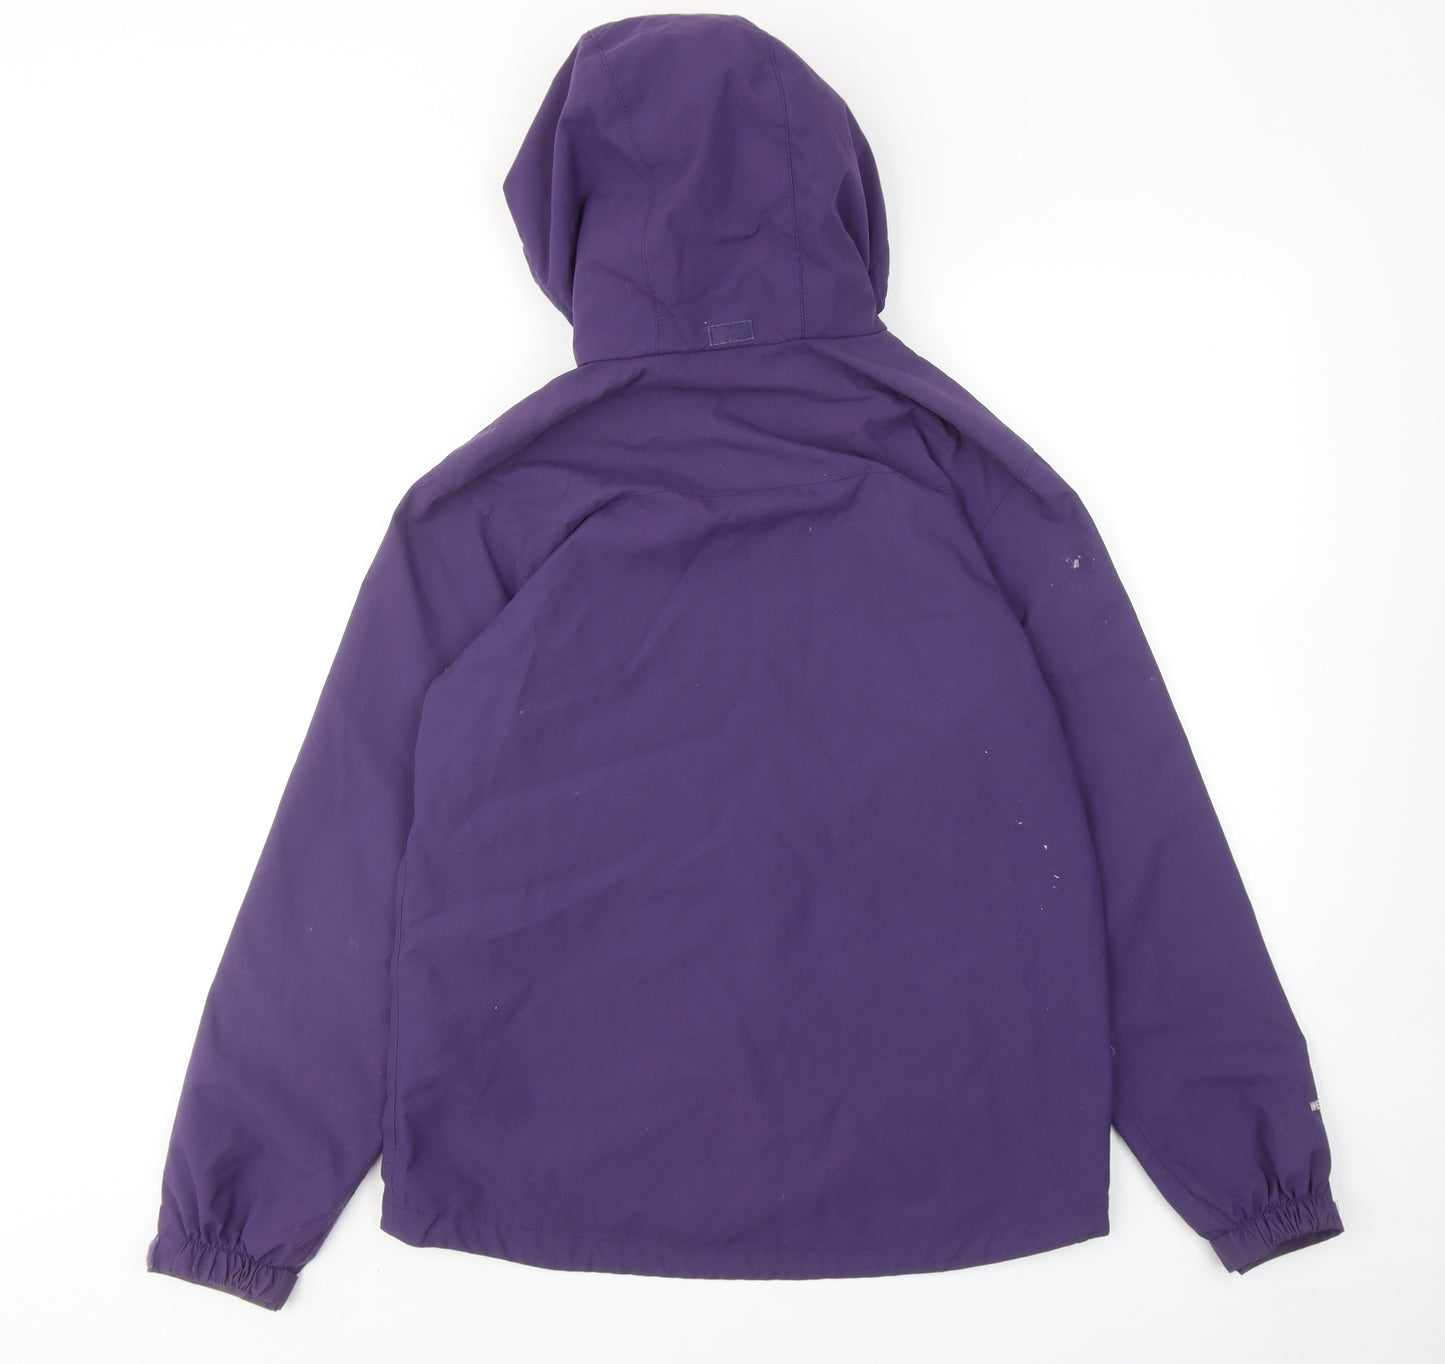 Karrimor Womens Purple Windbreaker Jacket Size 10 Zip